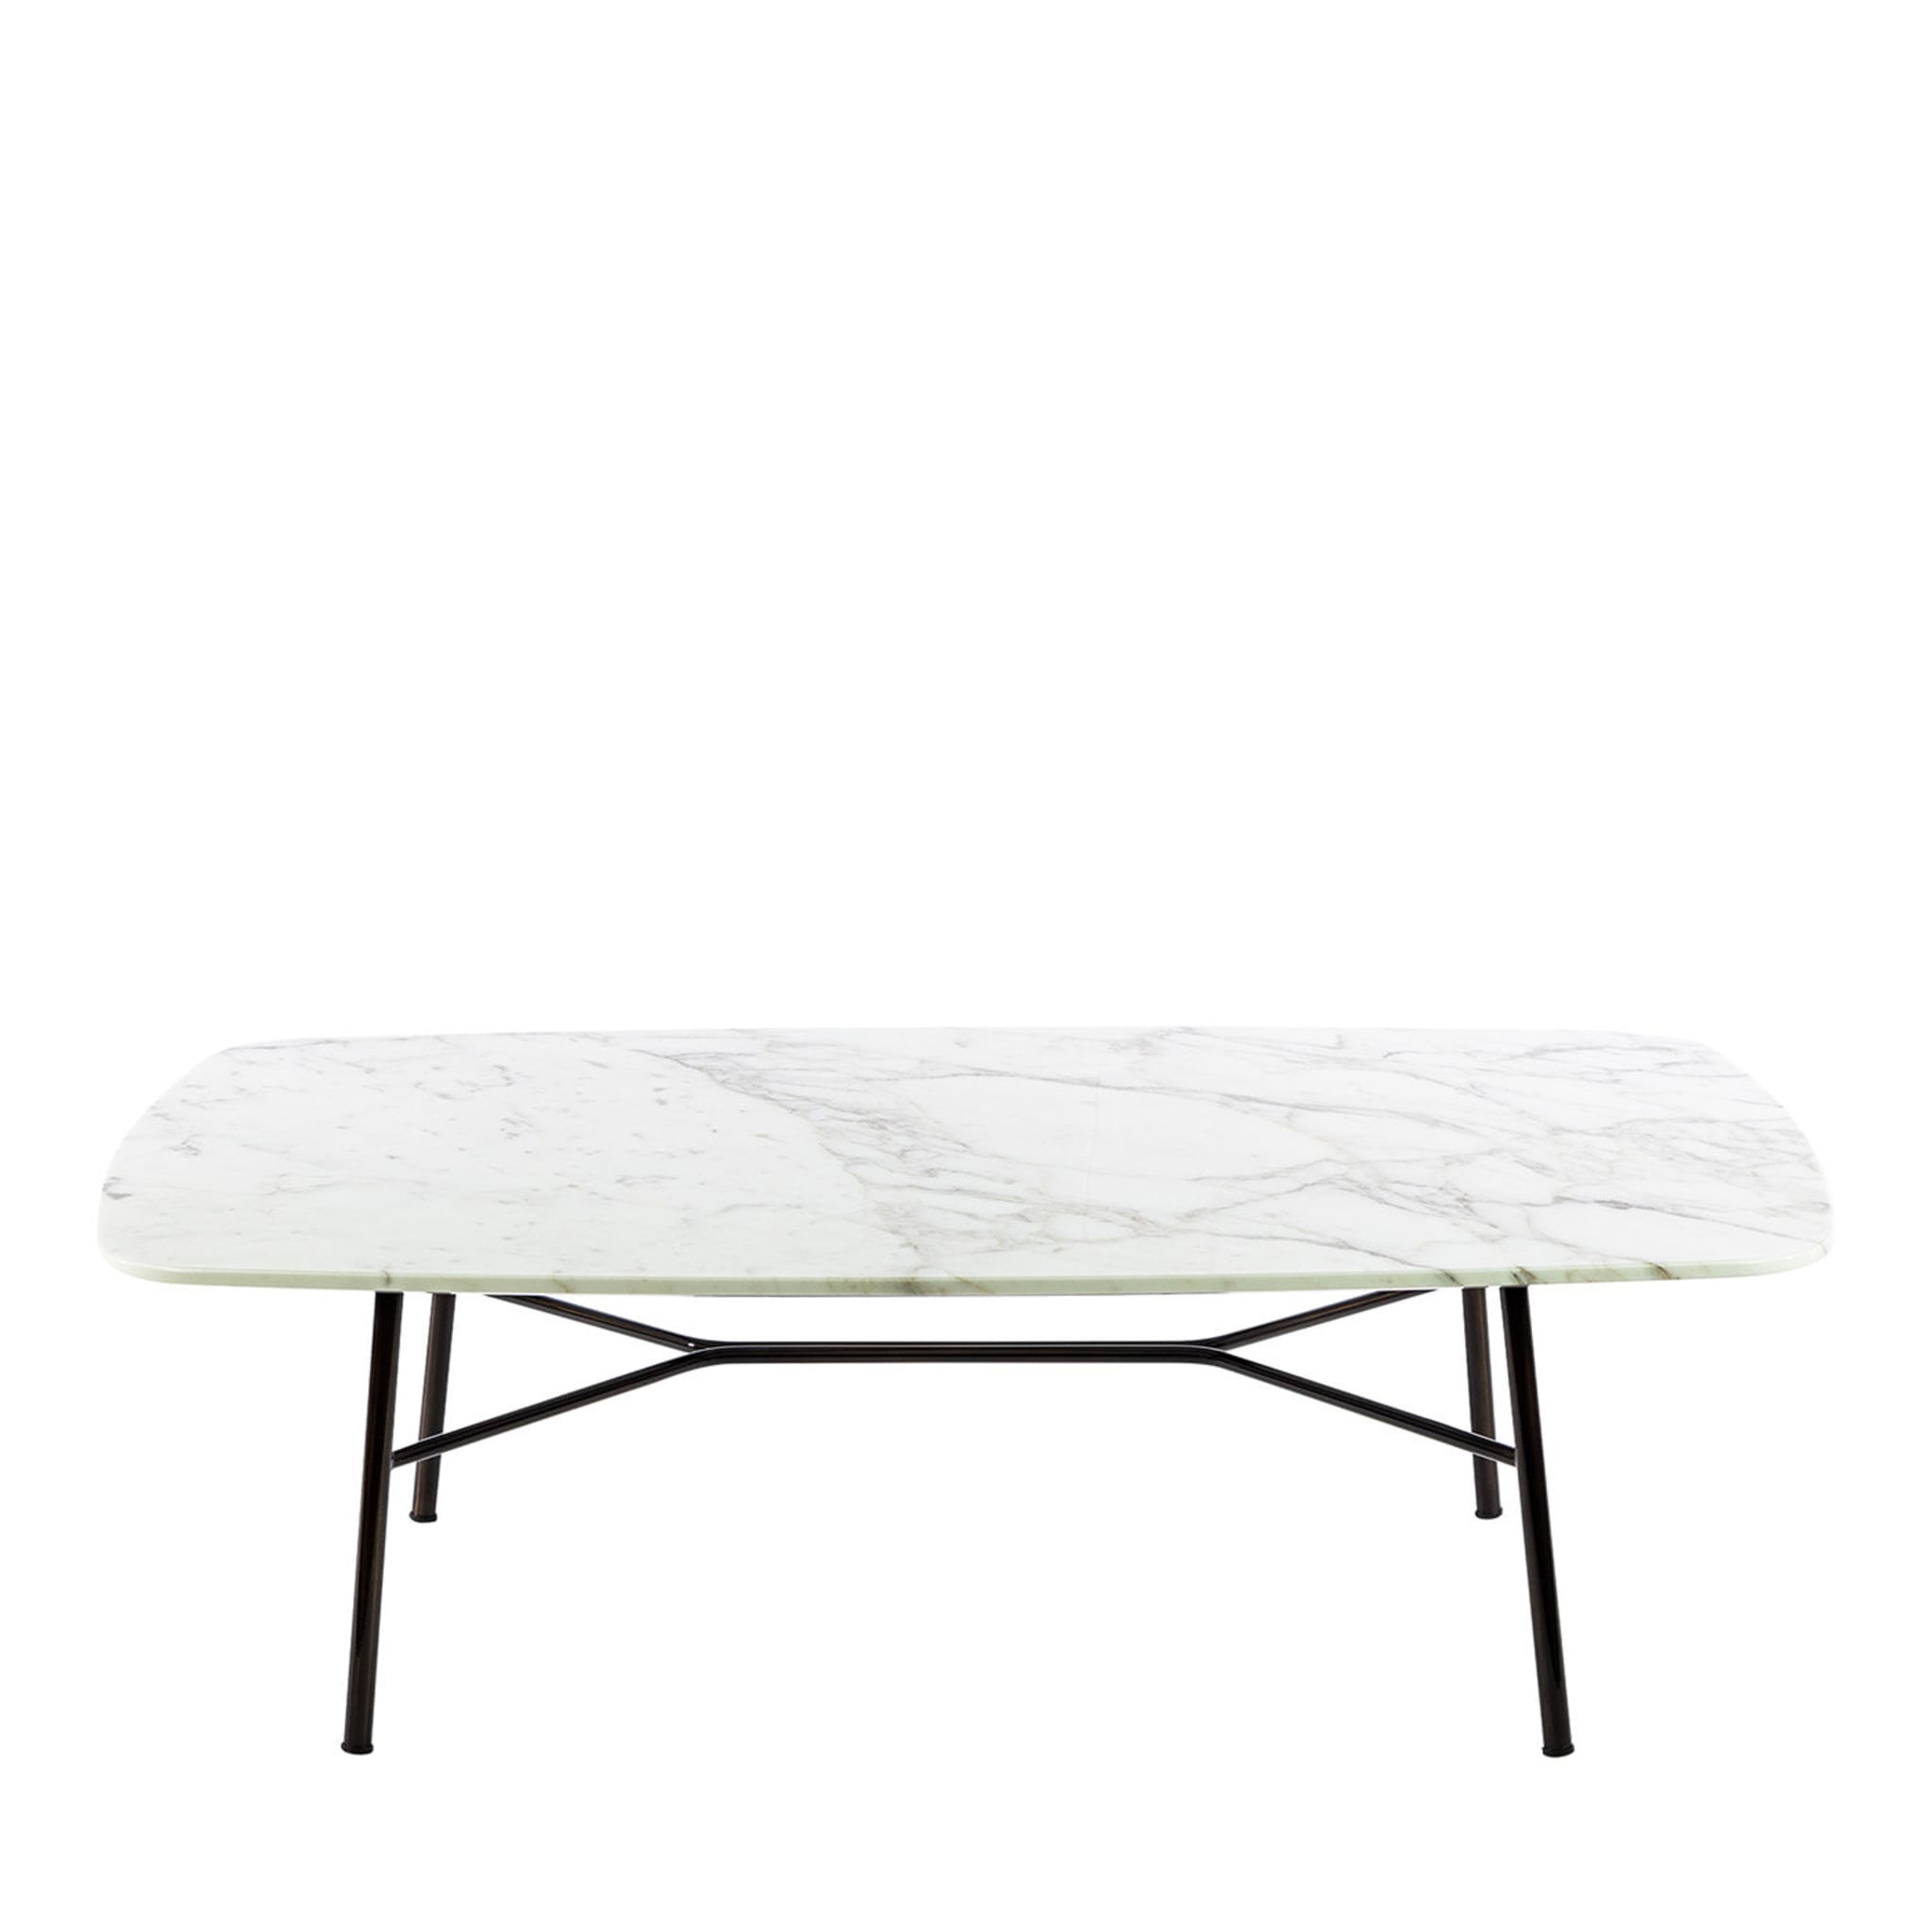 Mesa de centro rectangular Yuki con tapa de carrara blanca # 2 by Ep Studio - Vista principal